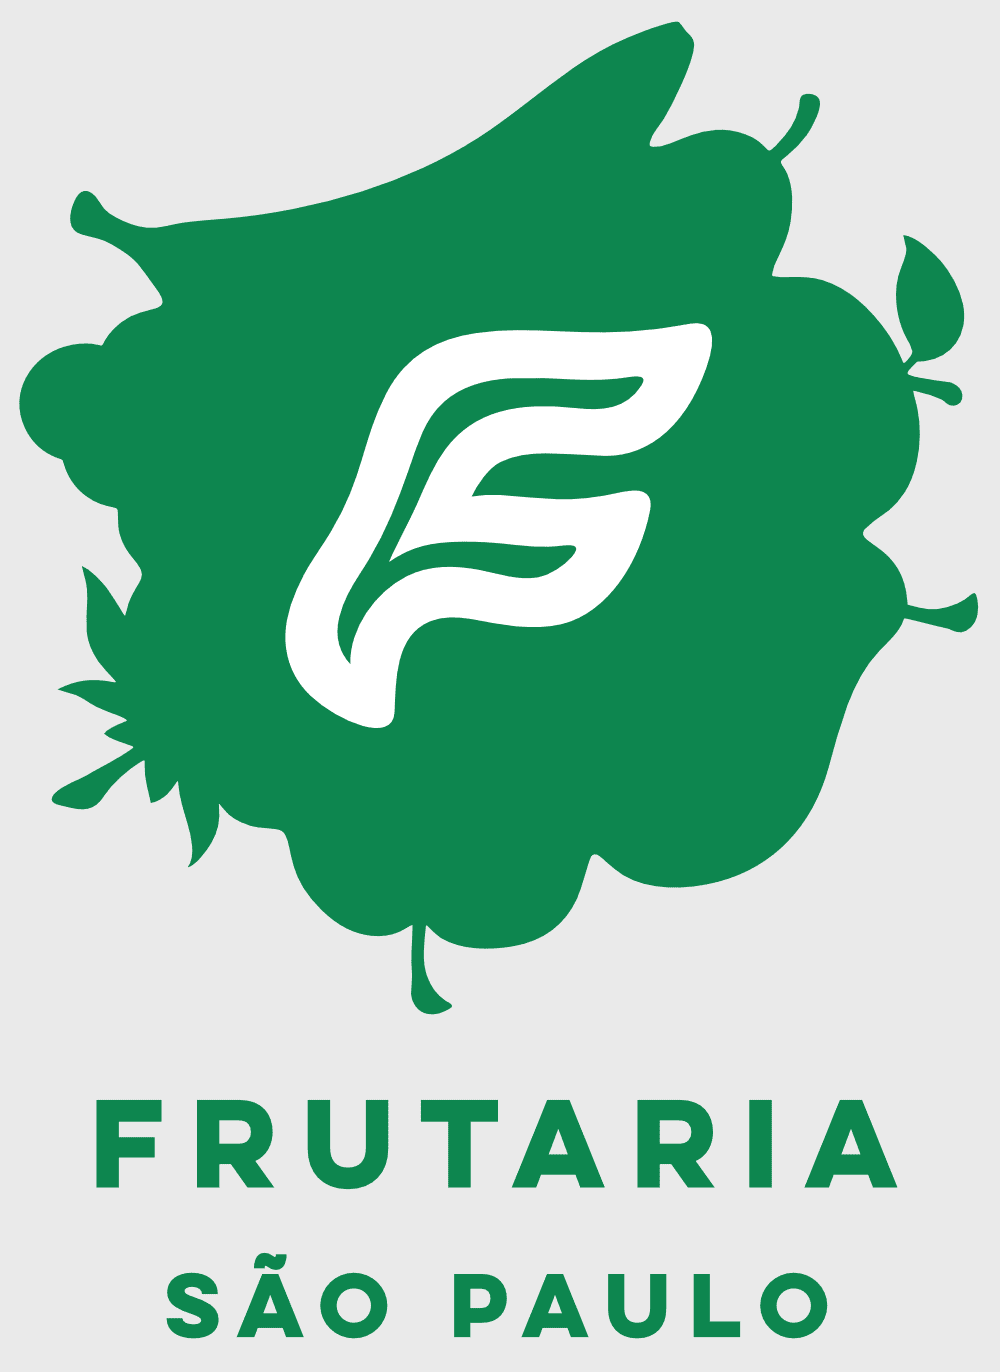 Logo da marca Frutaria São Paulo criado pela Brandium.